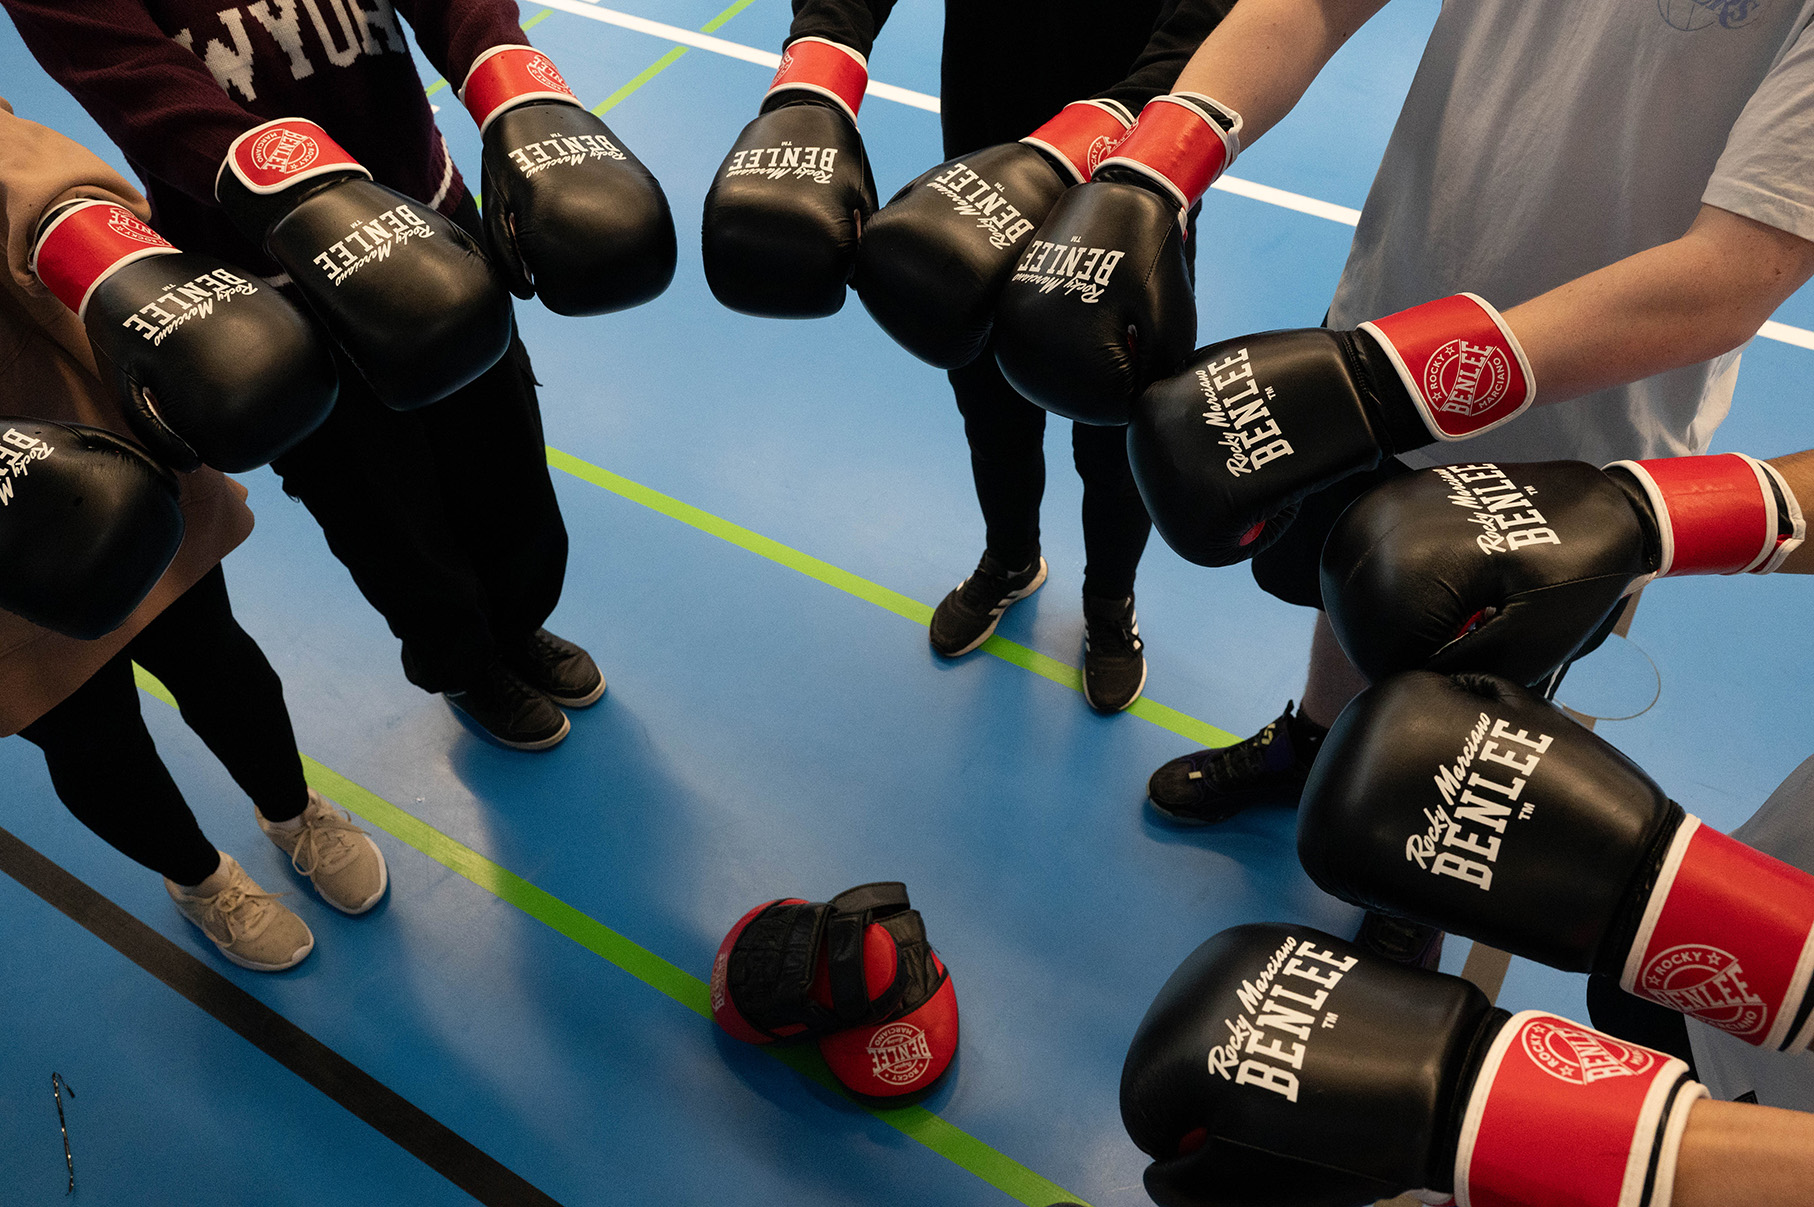 Boxhandschuhe werden im Kreis in die Mitte gehalten, man sieht nur Füße und Arme und den Boden einer Turnhalle.